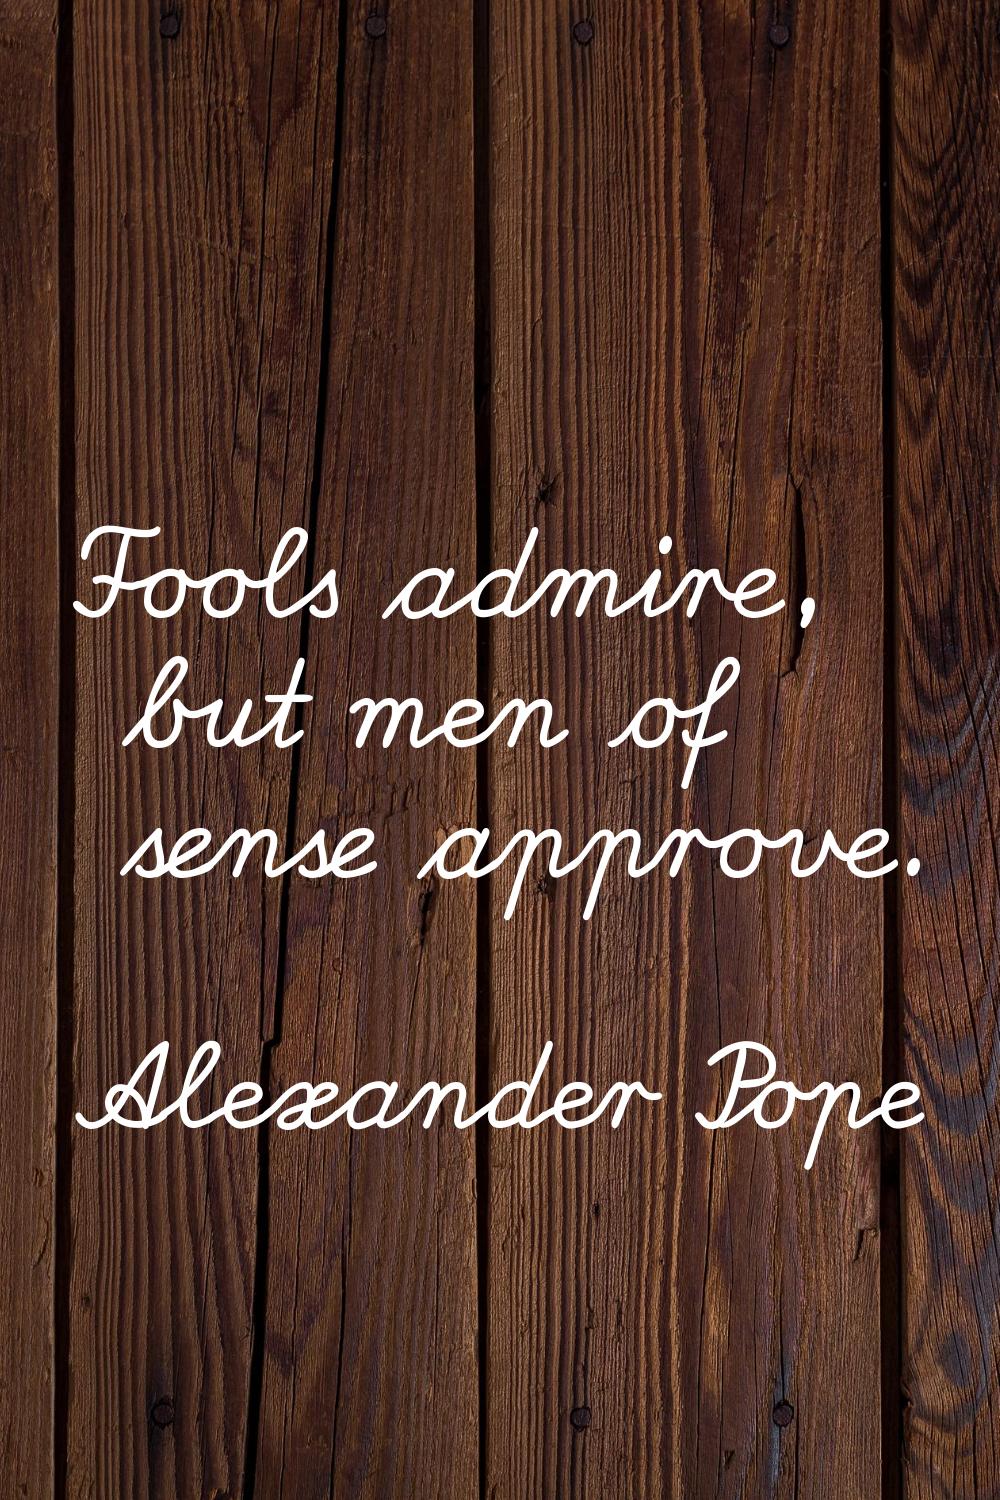 Fools admire, but men of sense approve.